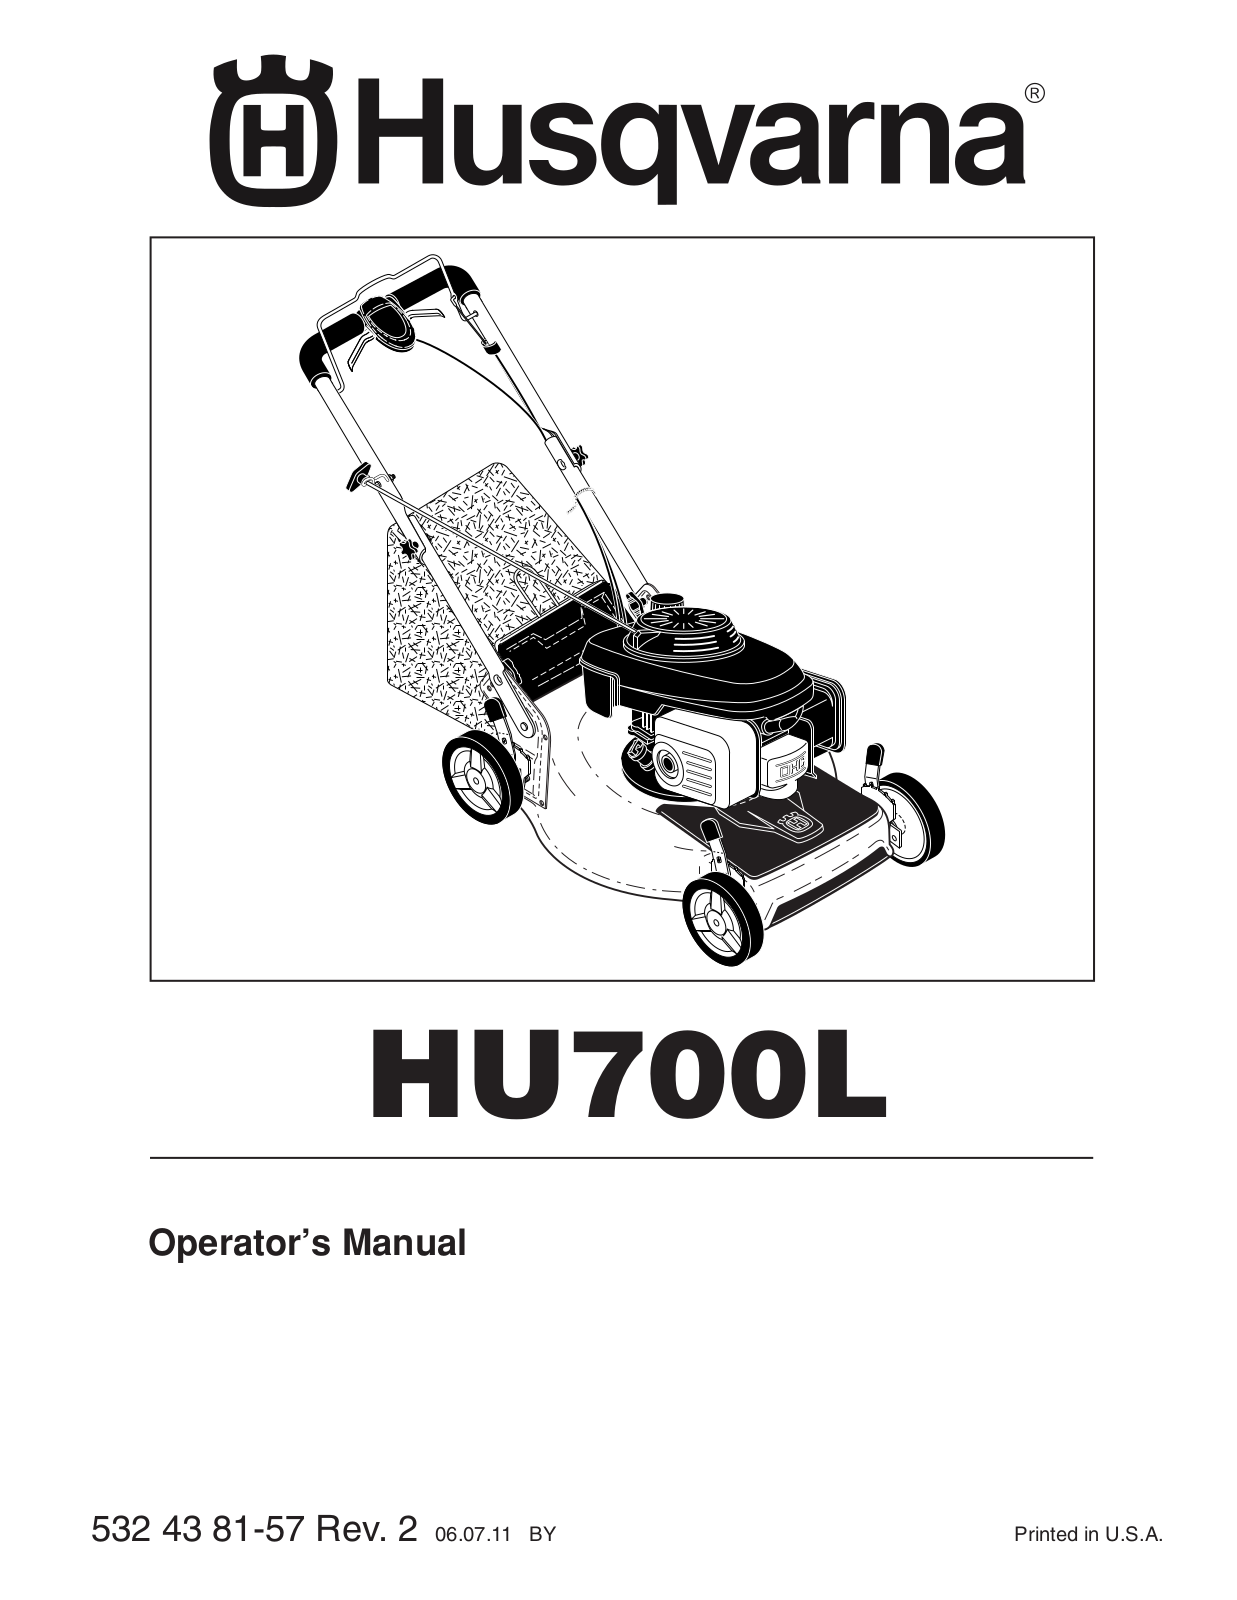 Husqvarna 961430097 User Manual